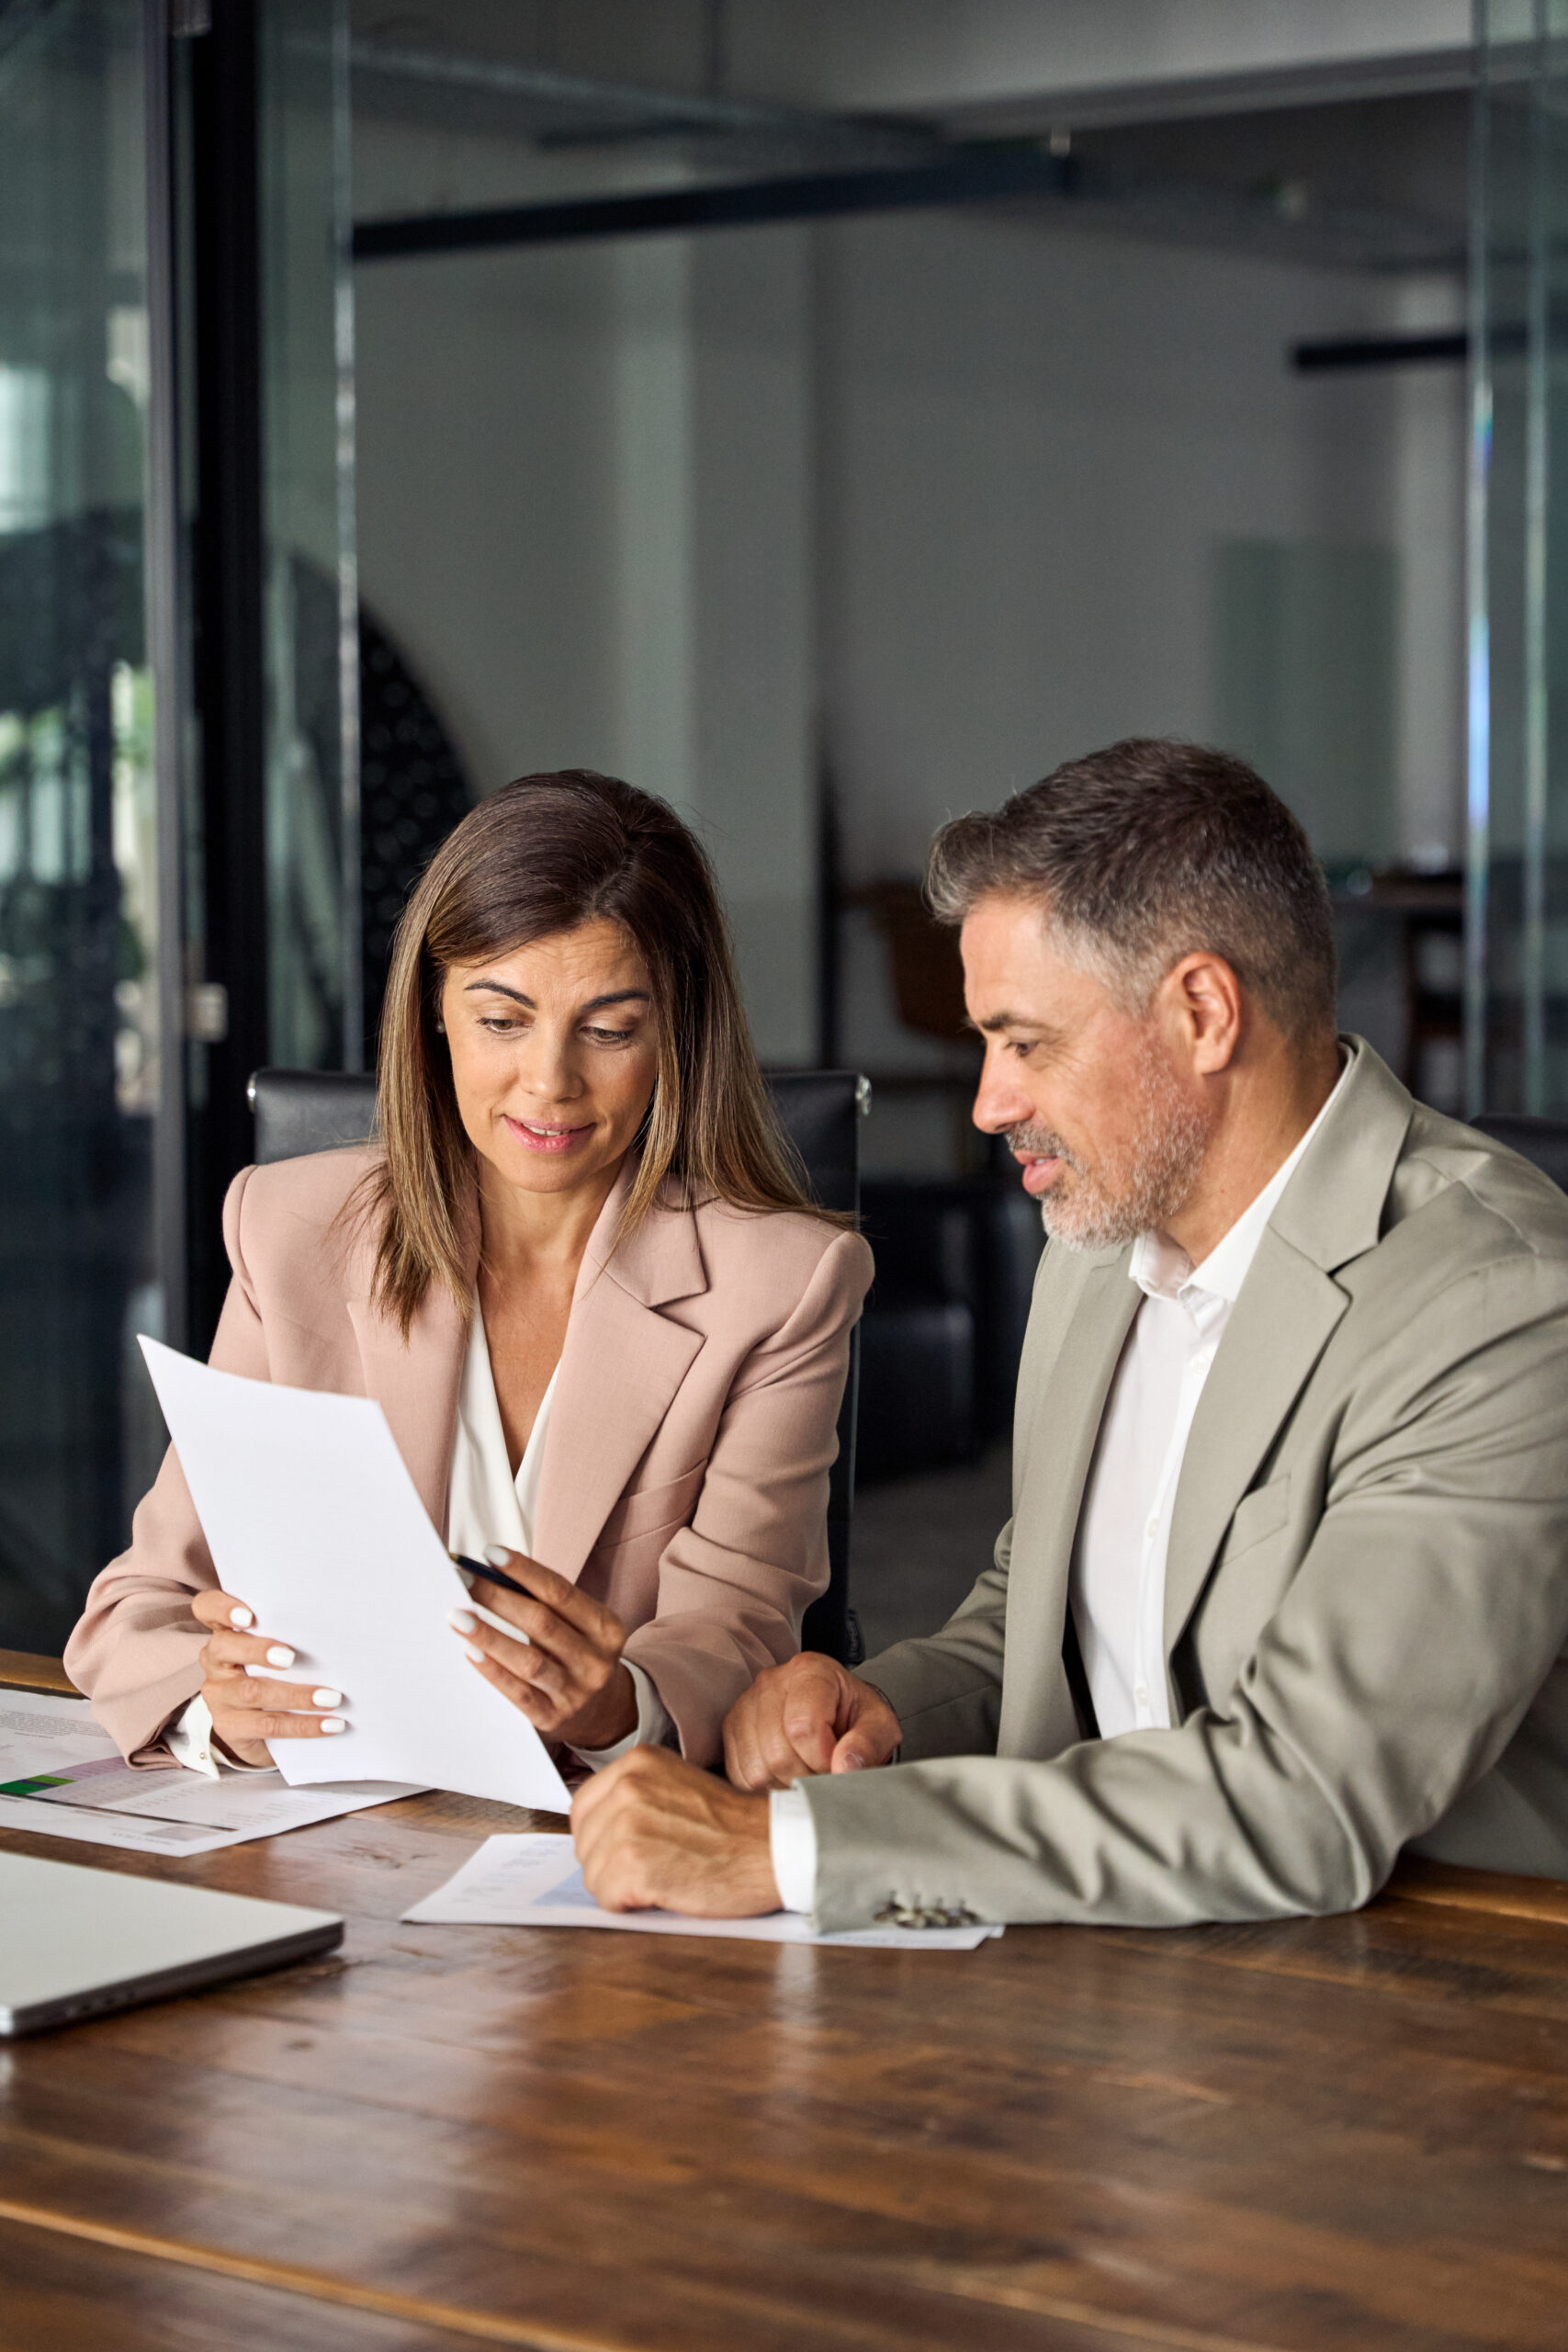 Une expert-comptable en réunion avec un client lui montre un document avec son offre de services